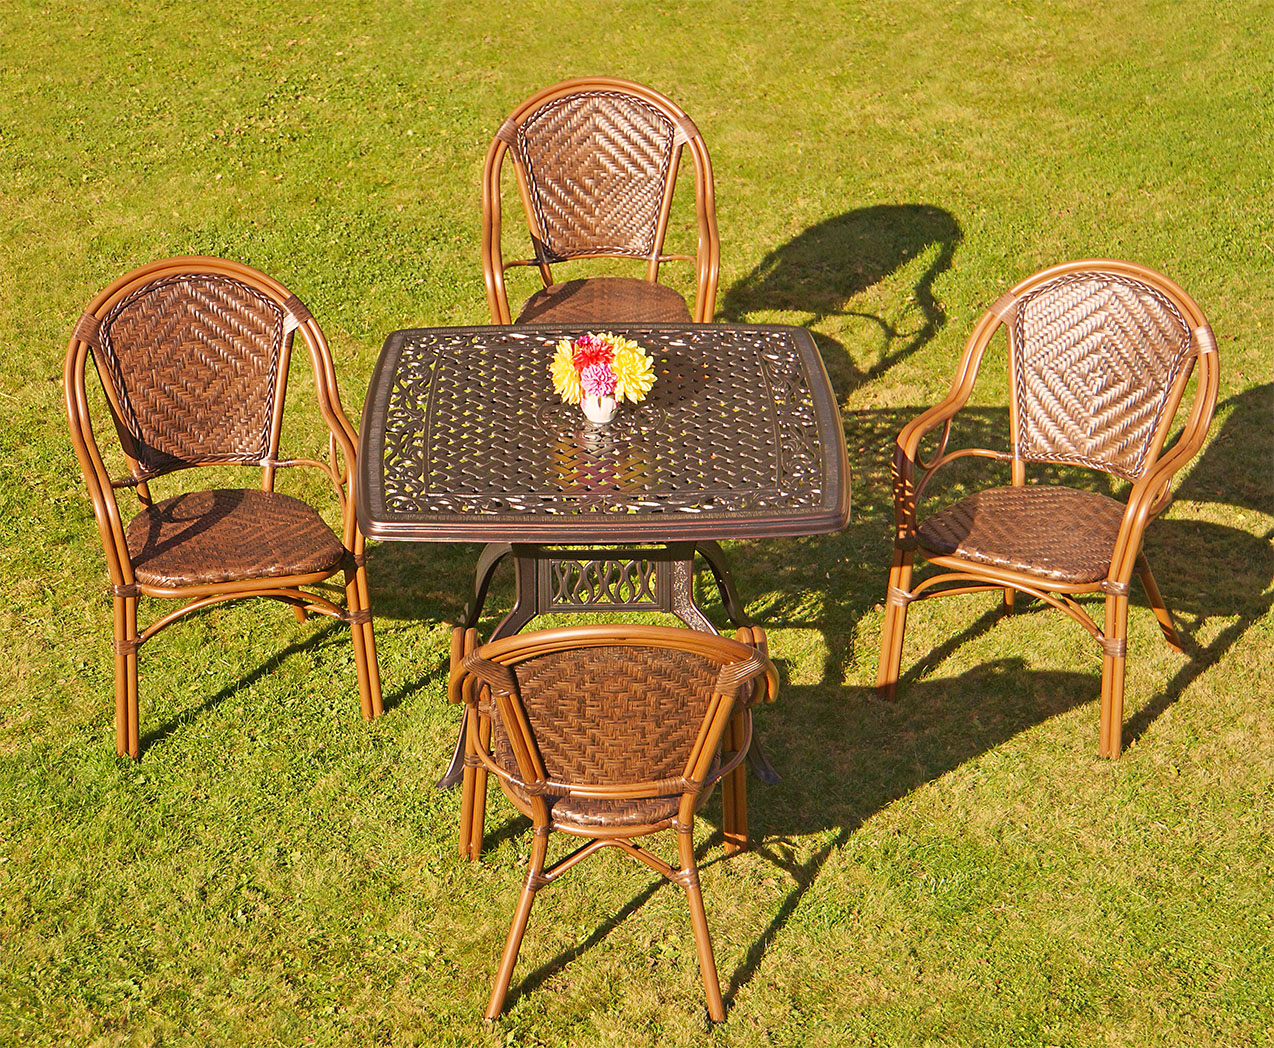 Садовая мебель от производителя, стол с креслами на веранду на террасу, плетёные кресла для дачи, мебель в беседку, комплект уличной мебели на летнюю веранду кафе, чугунный квадратный стол